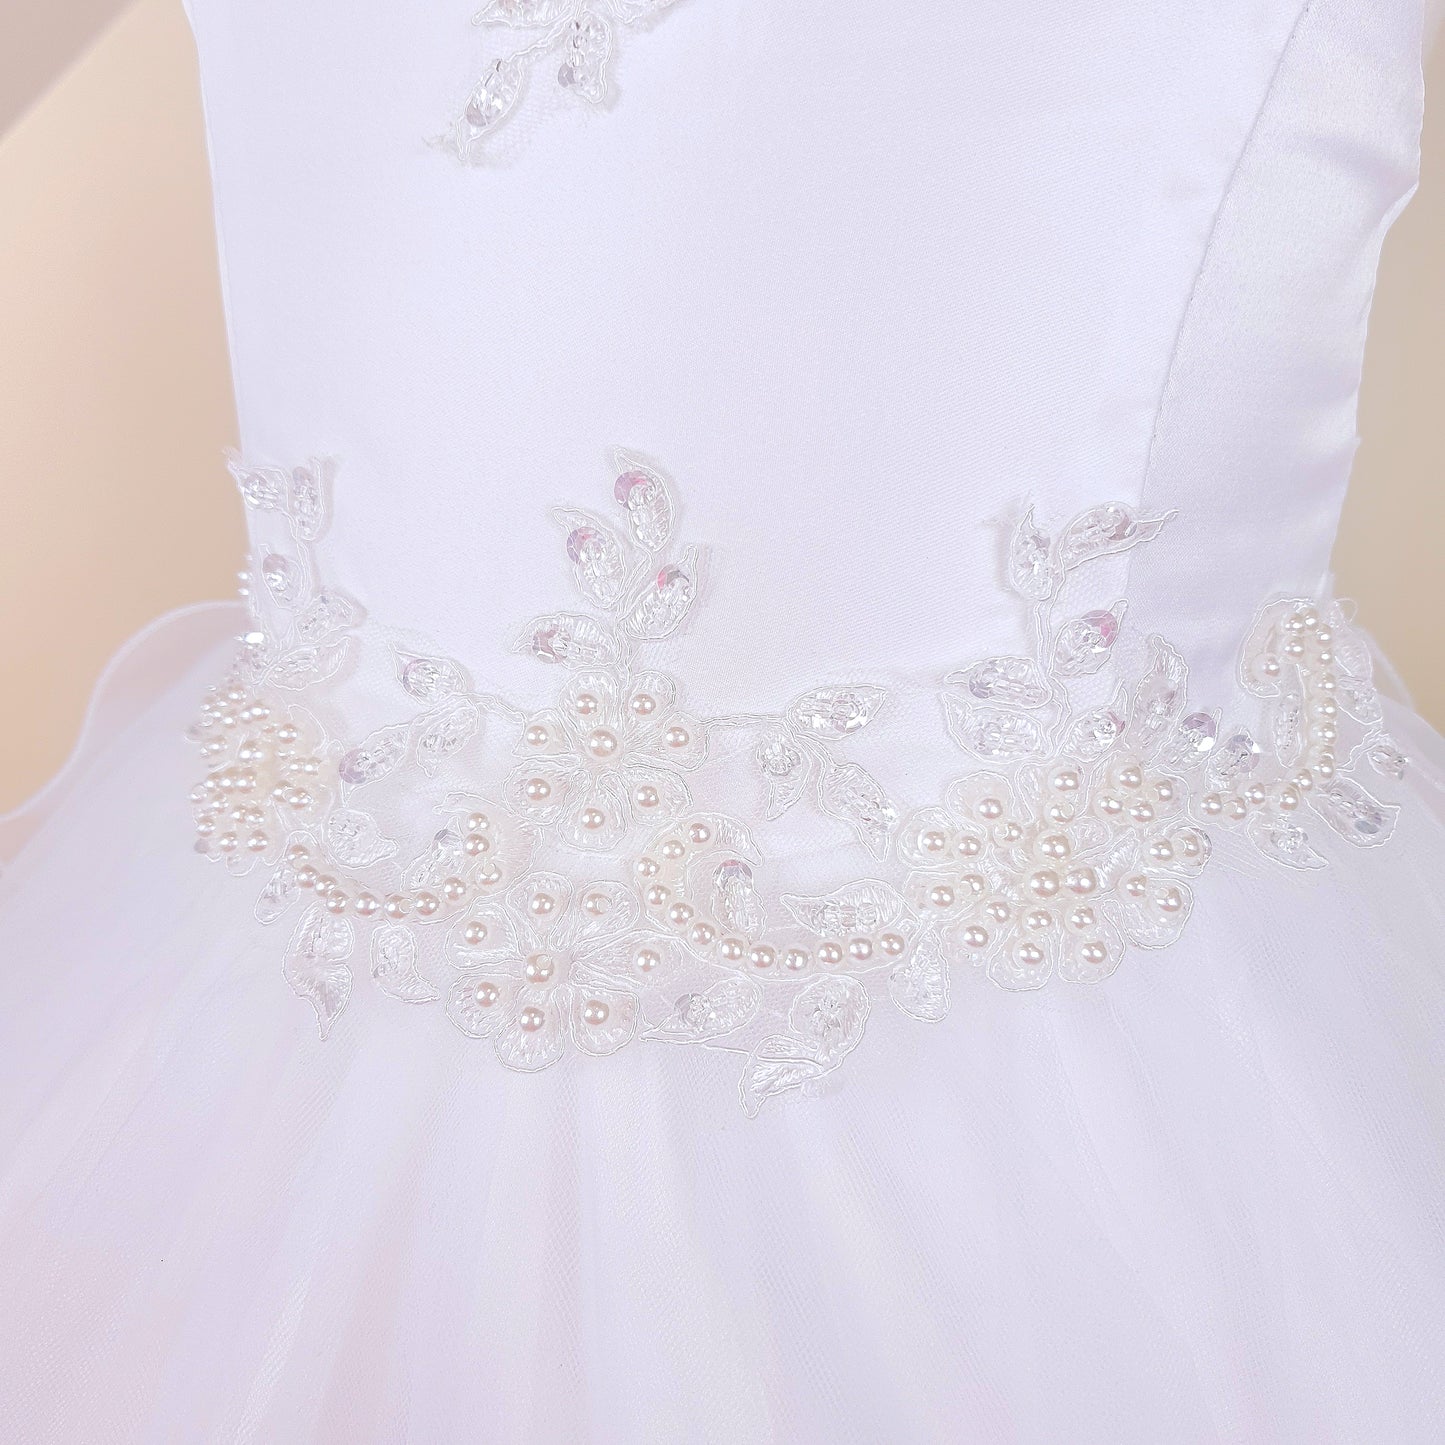 Royal high-low white dress